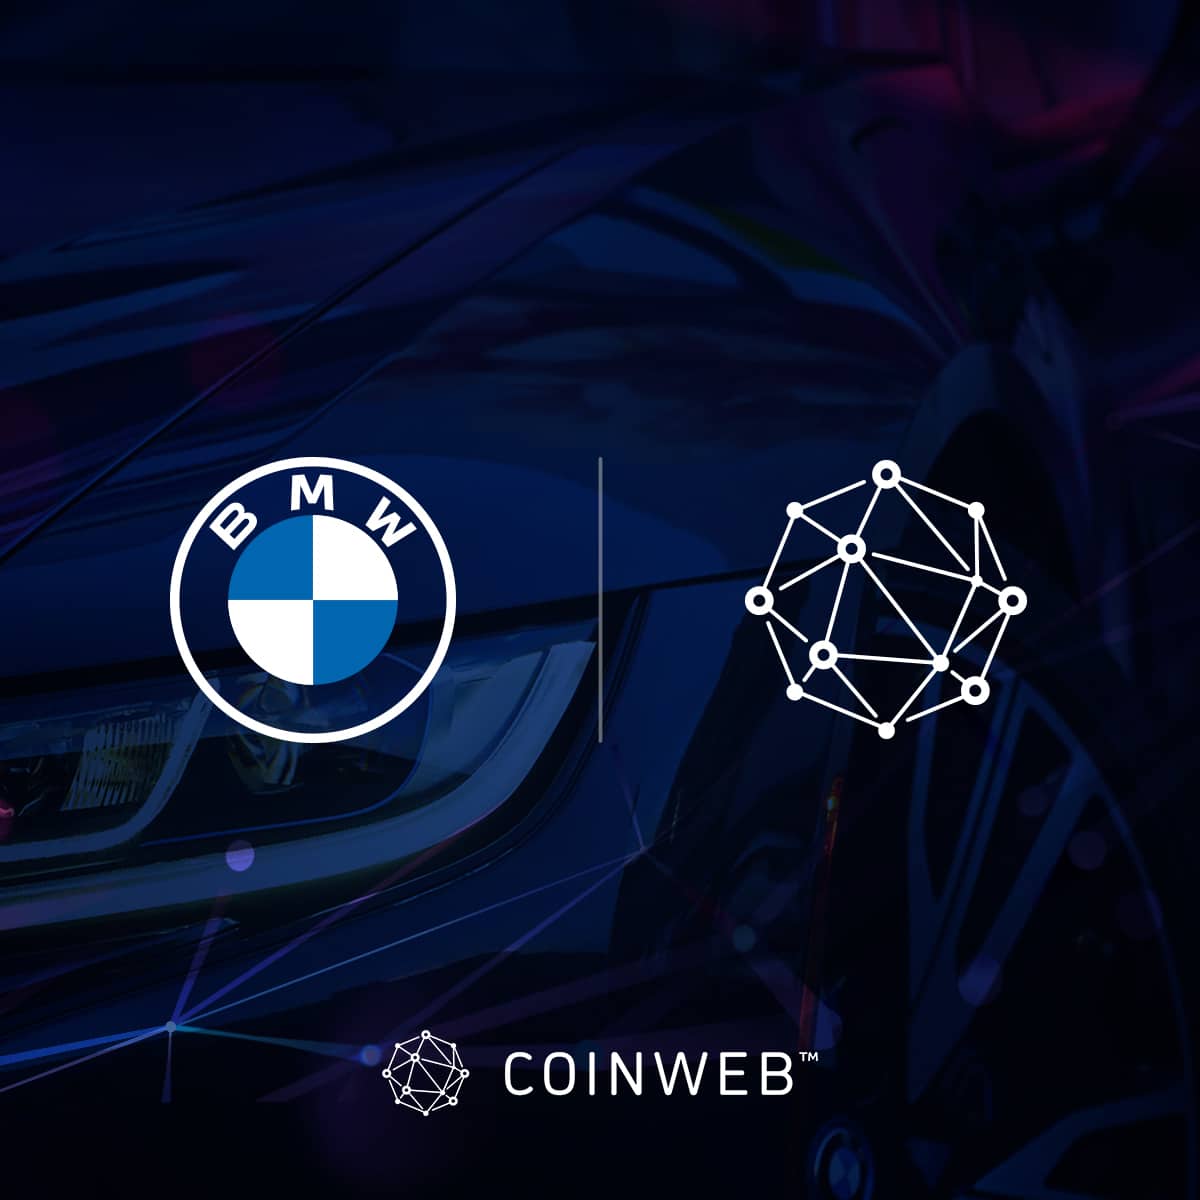 BMW 标志位于蓝色背景上的 Coinweb 标志旁边。